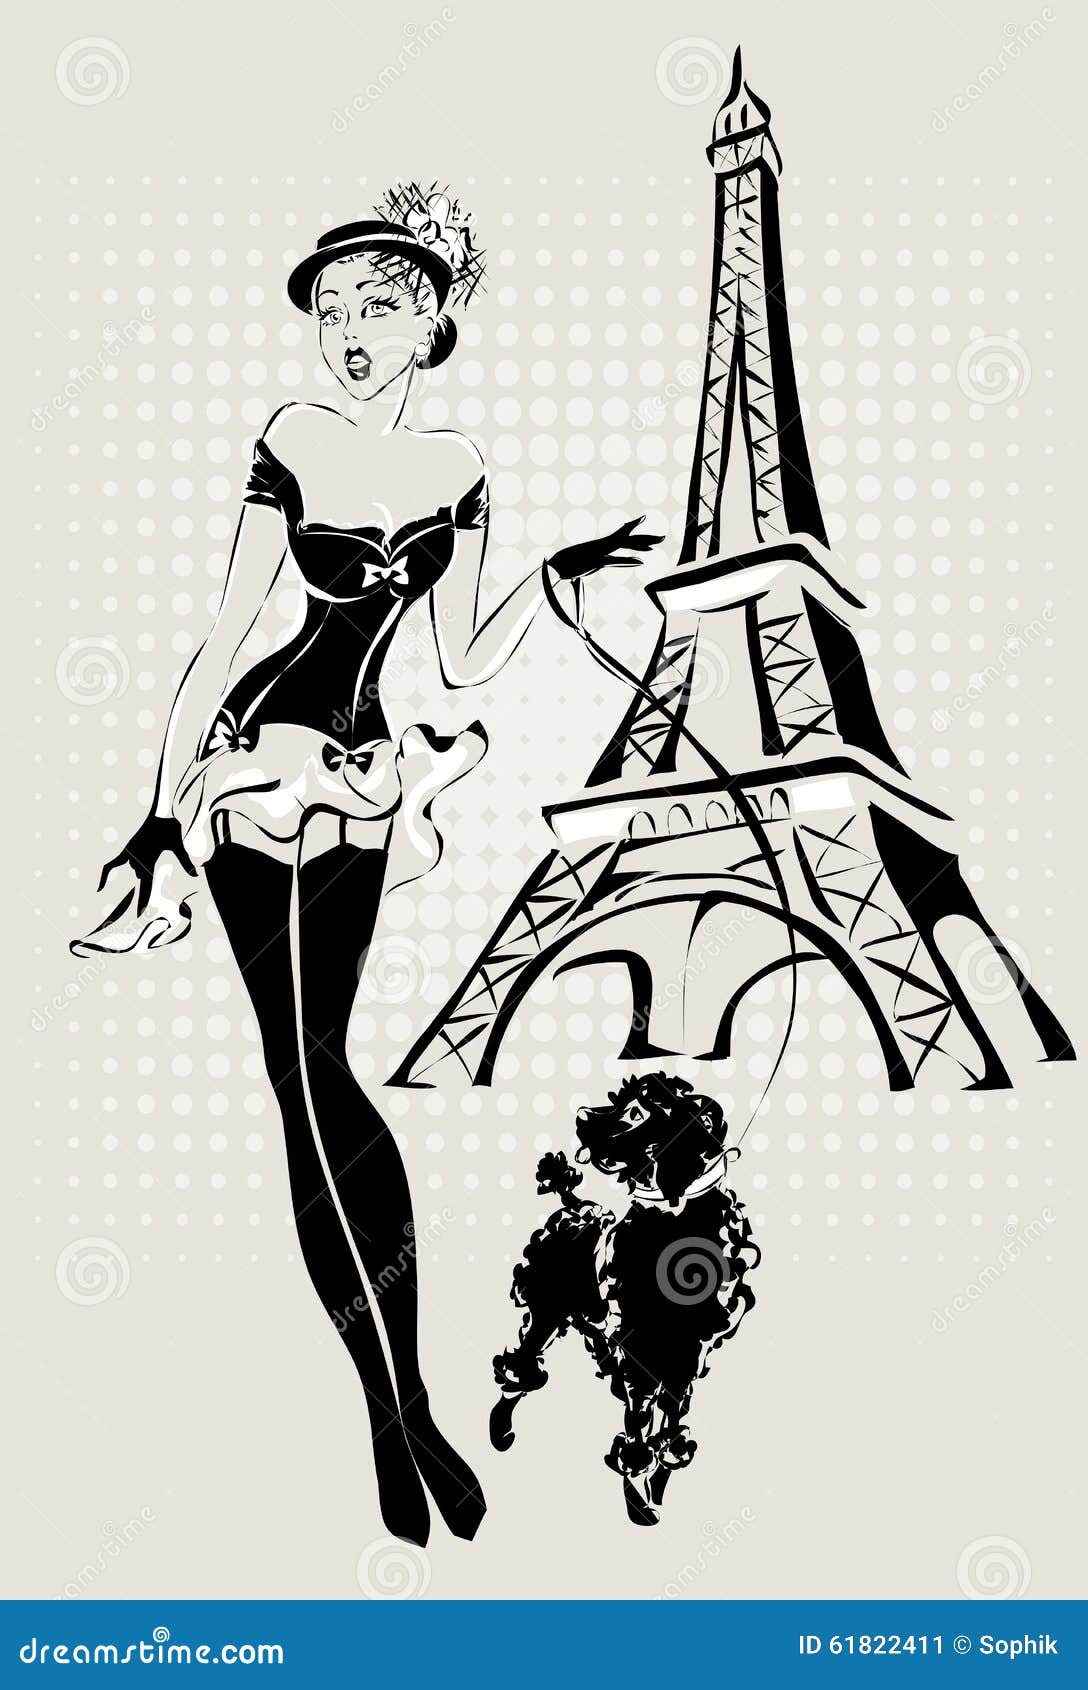 Donna di modo dell'illustrazione vicino alla torre Eiffel con il piccolo cane. Donna in bianco e nero di modo dell'illustrazione di Pop art vicino alla torre Eiffel con il piccolo cane, modello disegnato a mano di pin-up del fondo dell'illustrazione